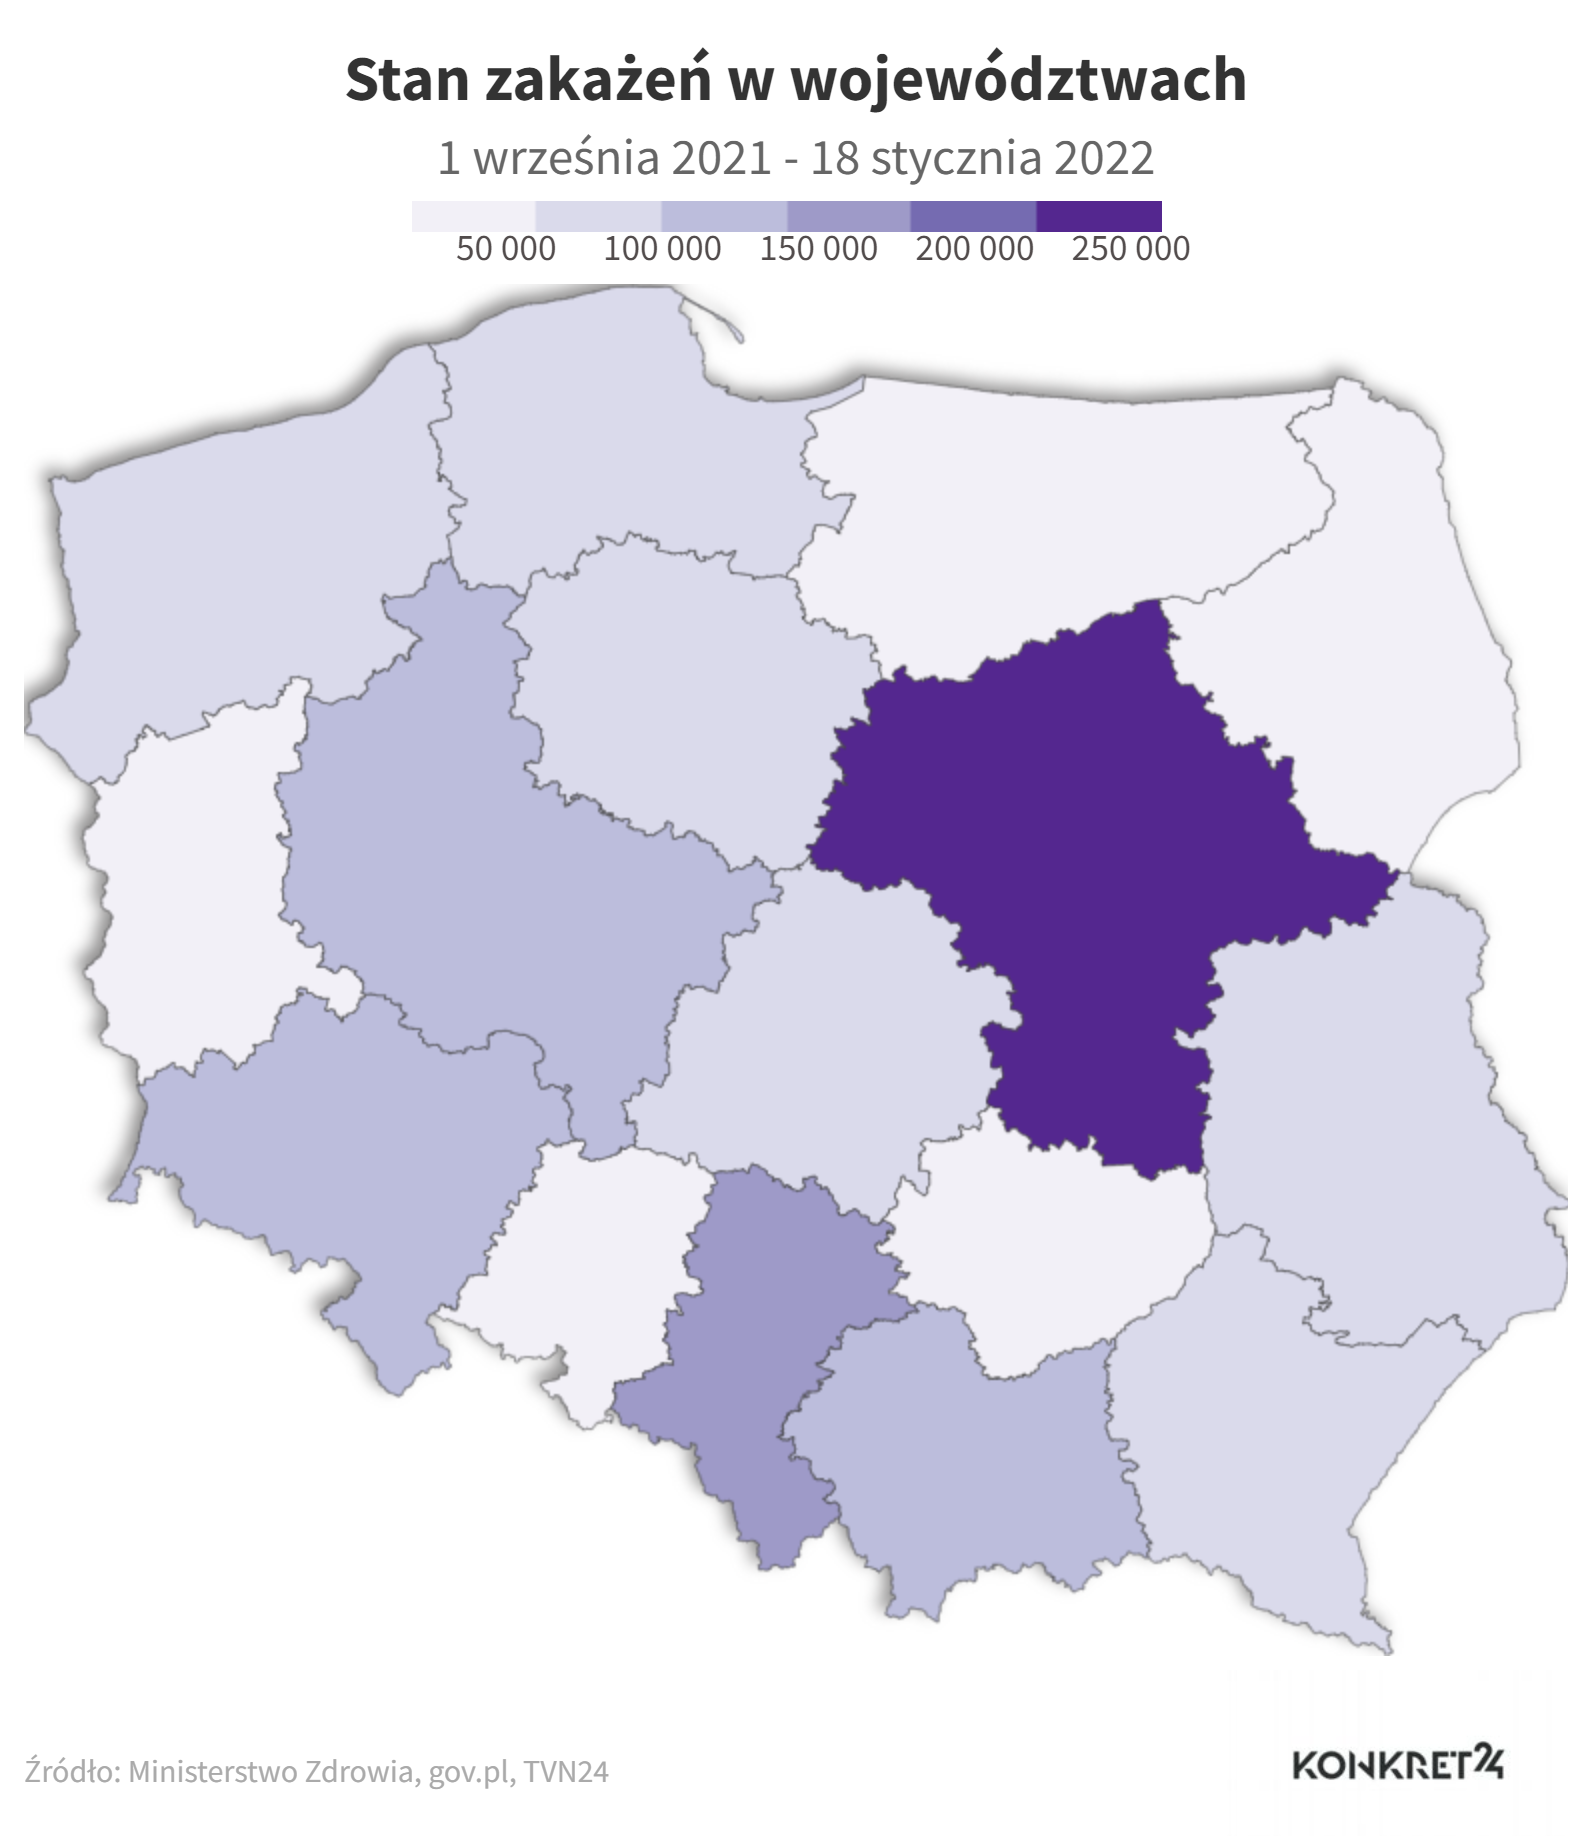 Stan zakażeń w województwach (1 września 2021 - 18 stycznia 2022)